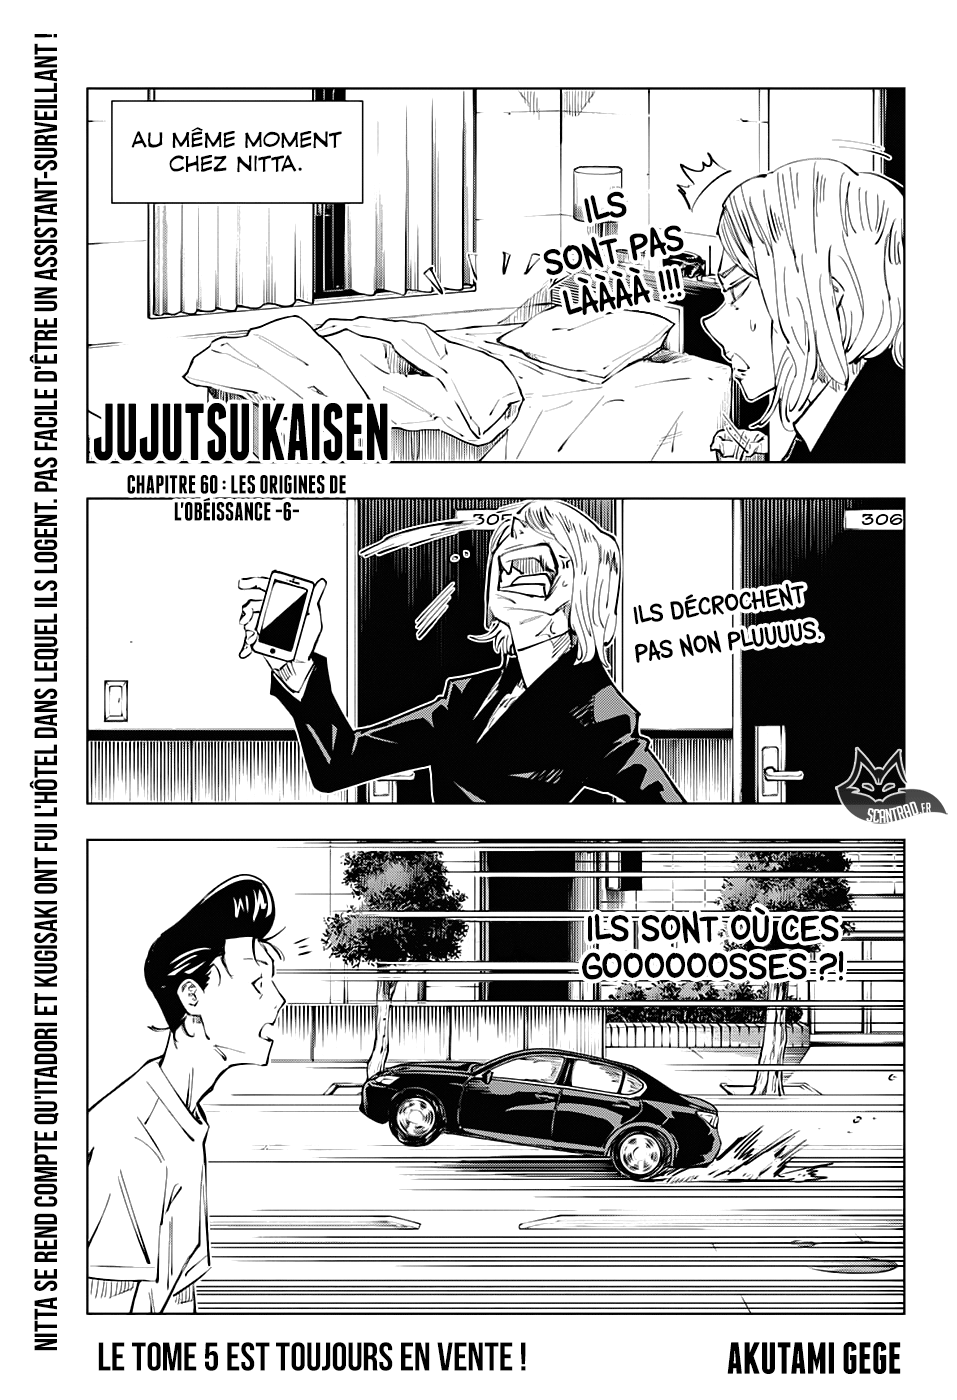 Jujutsu Kaisen: Chapter chapitre-60 - Page 1